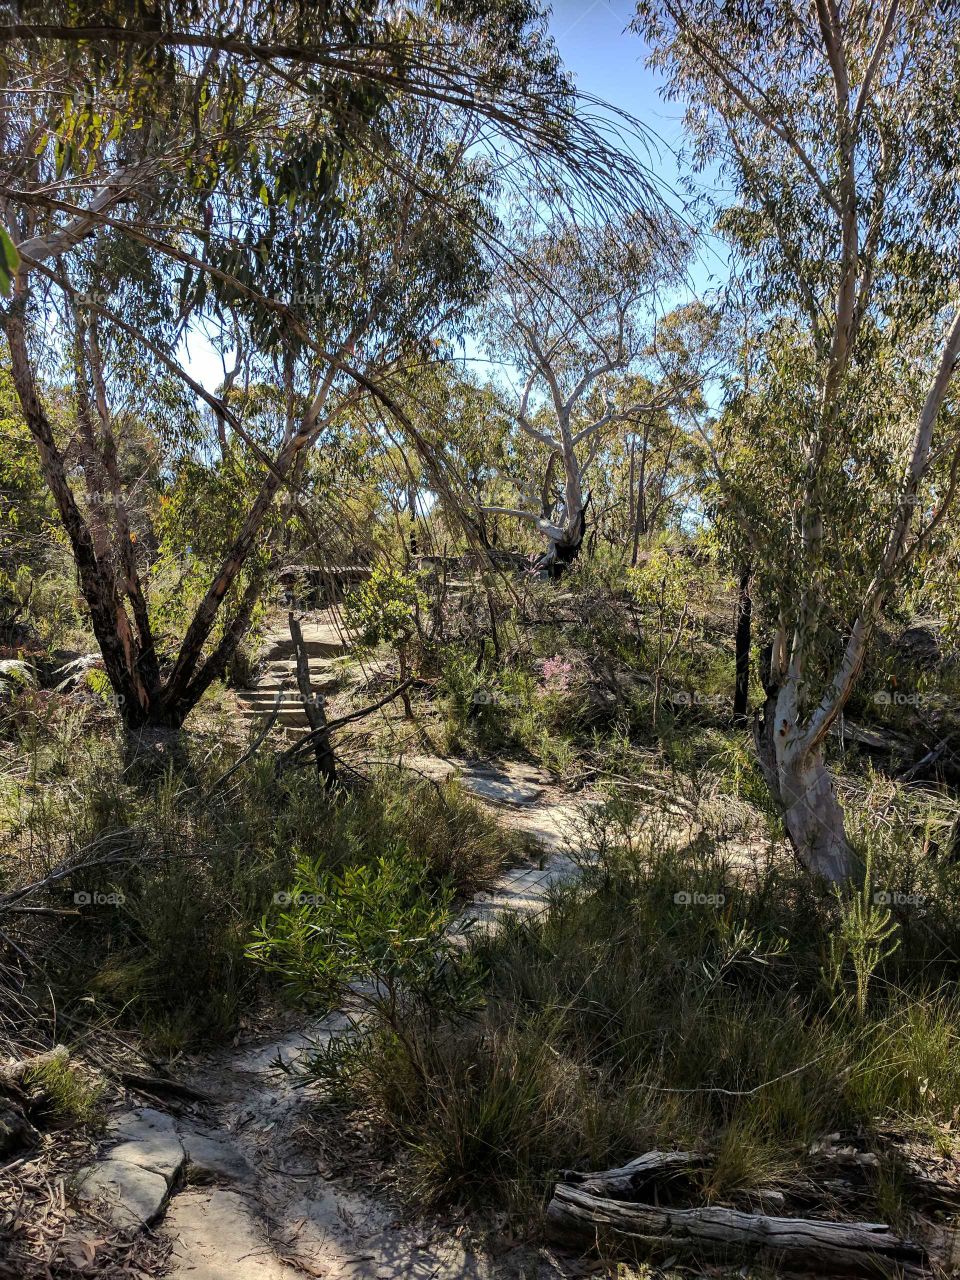 Aussie landscape